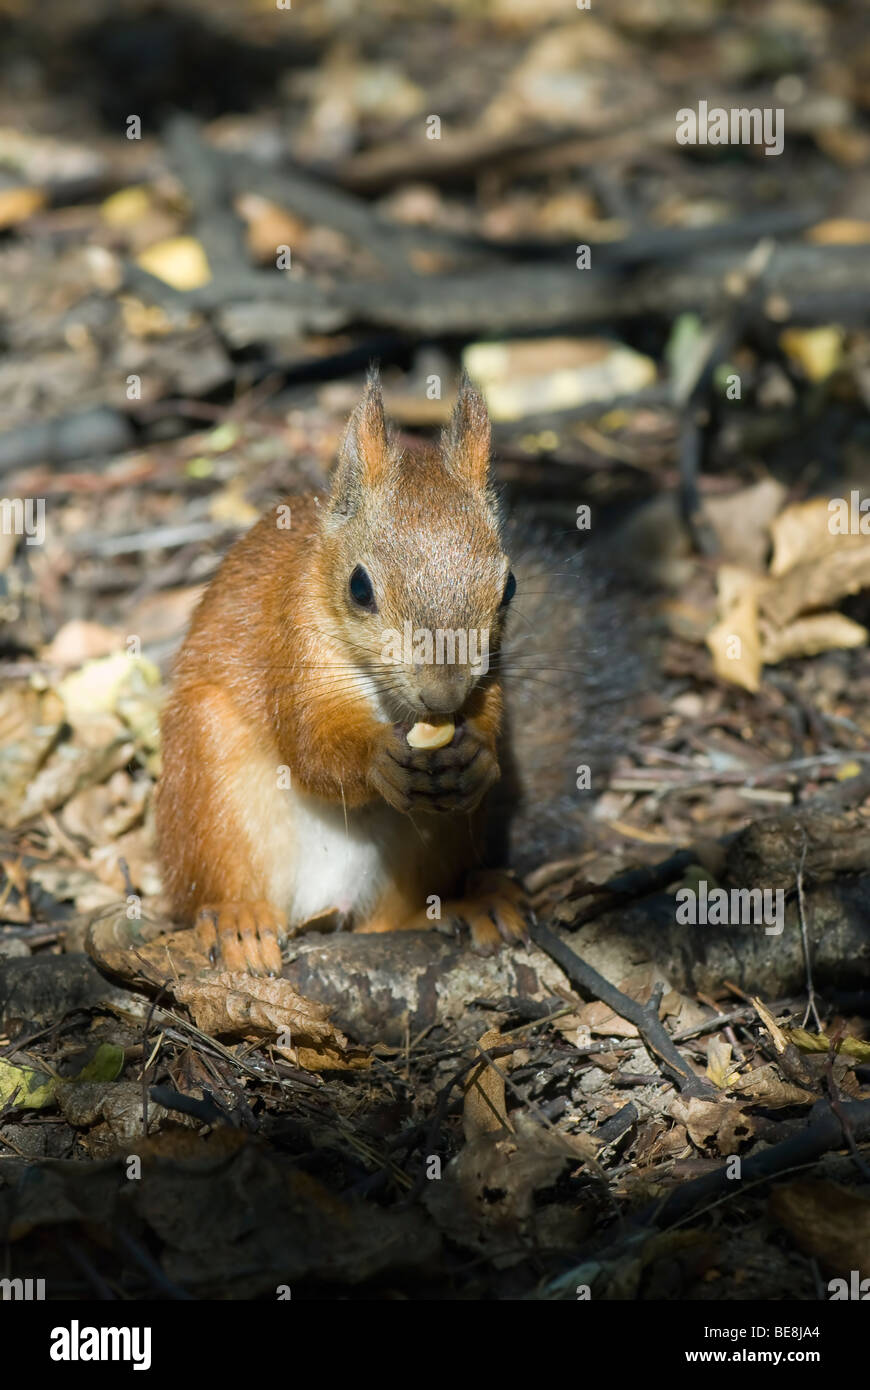 Uno scoiattolo mangiare il dado Foto Stock